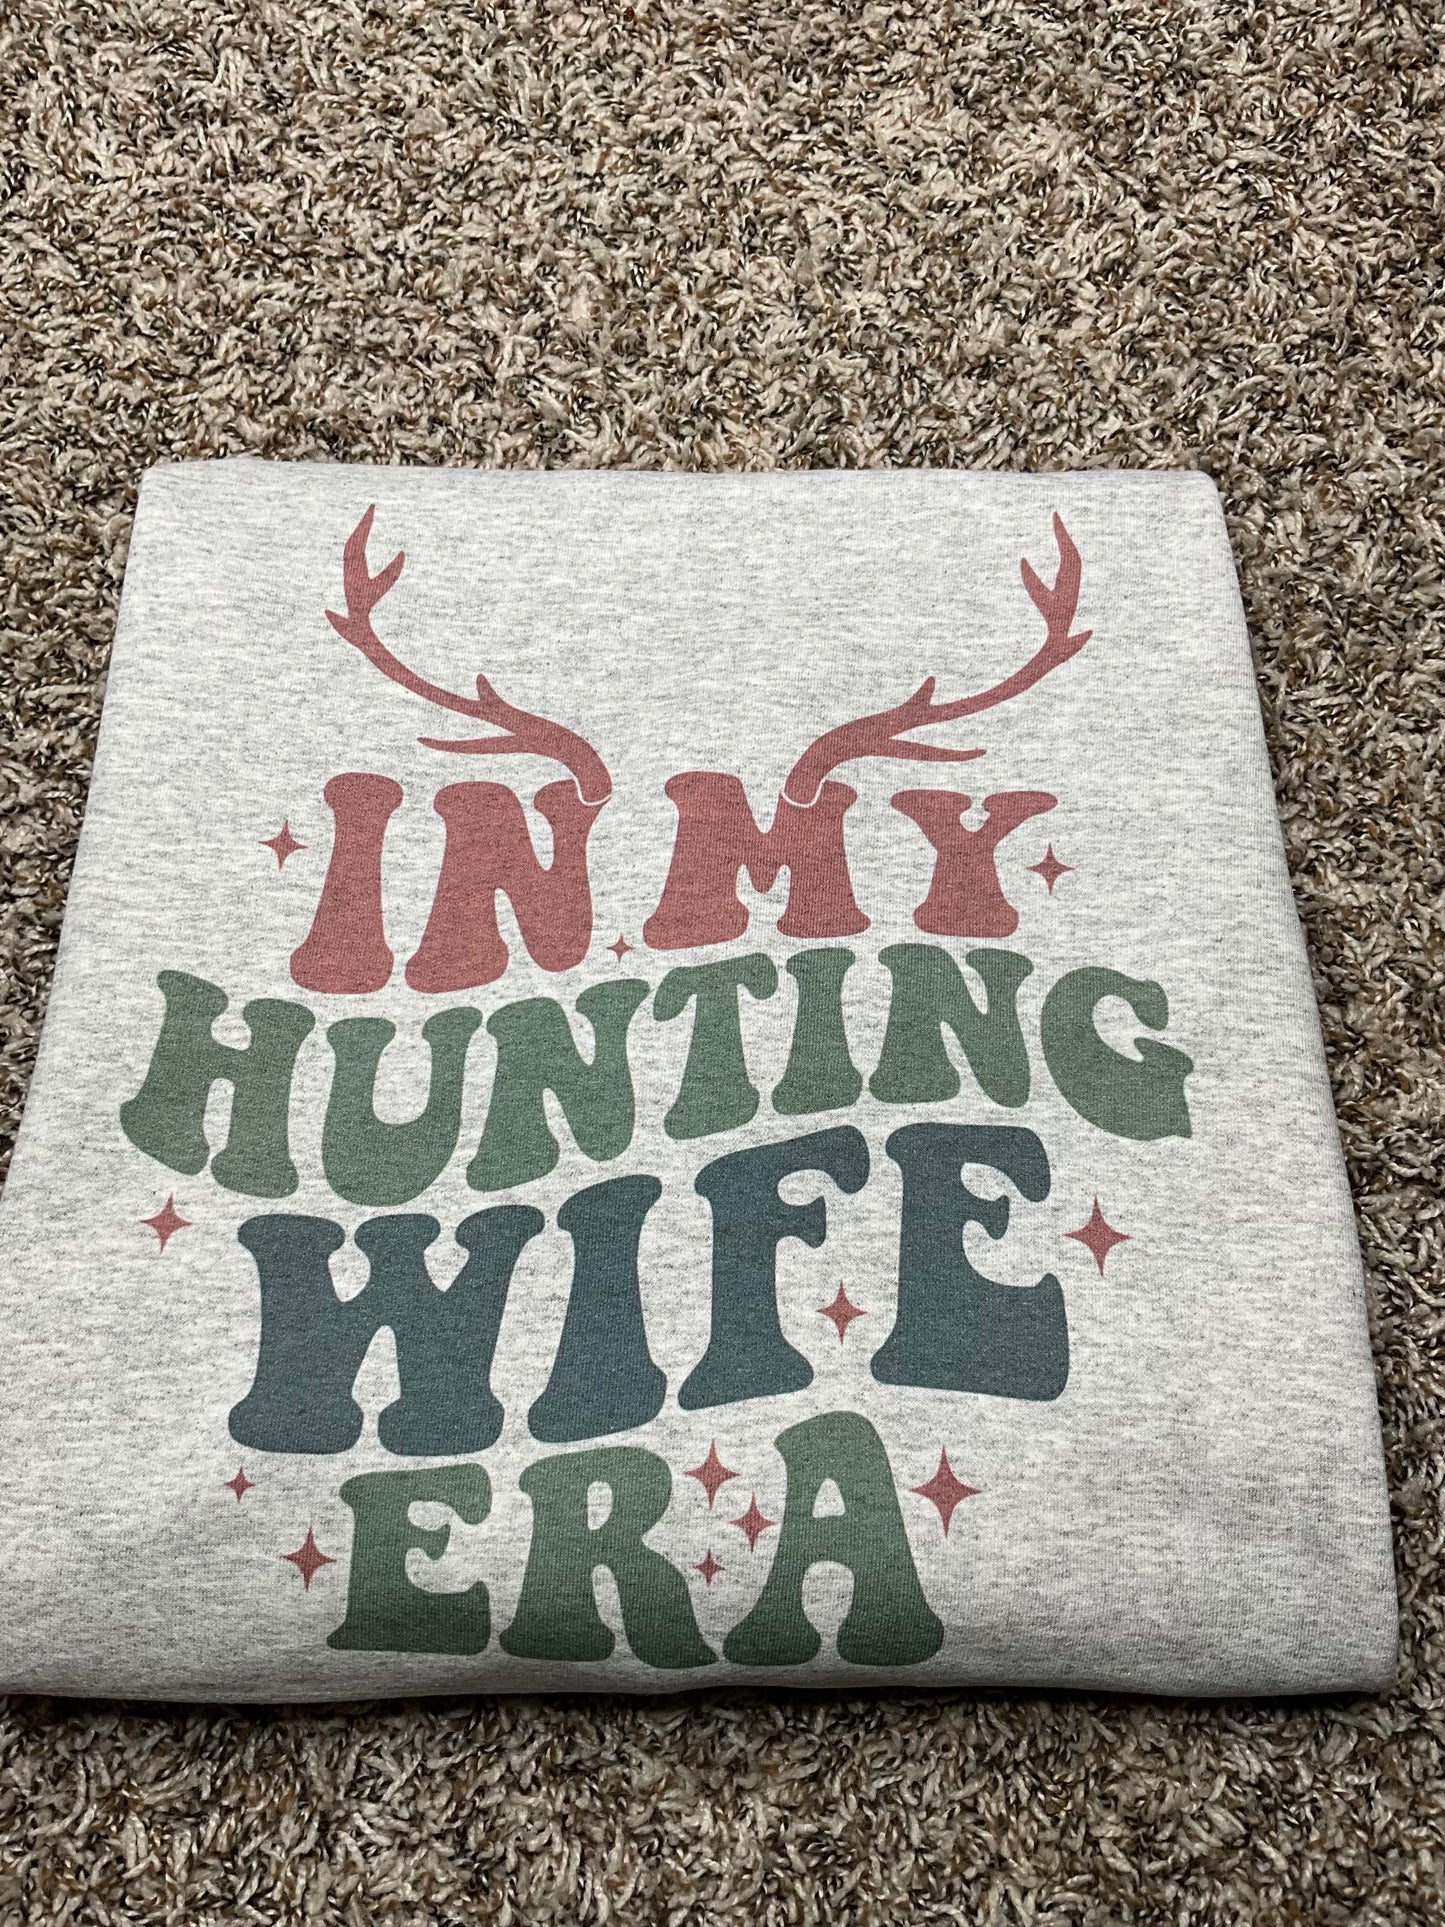 In My Hunting Wife Era